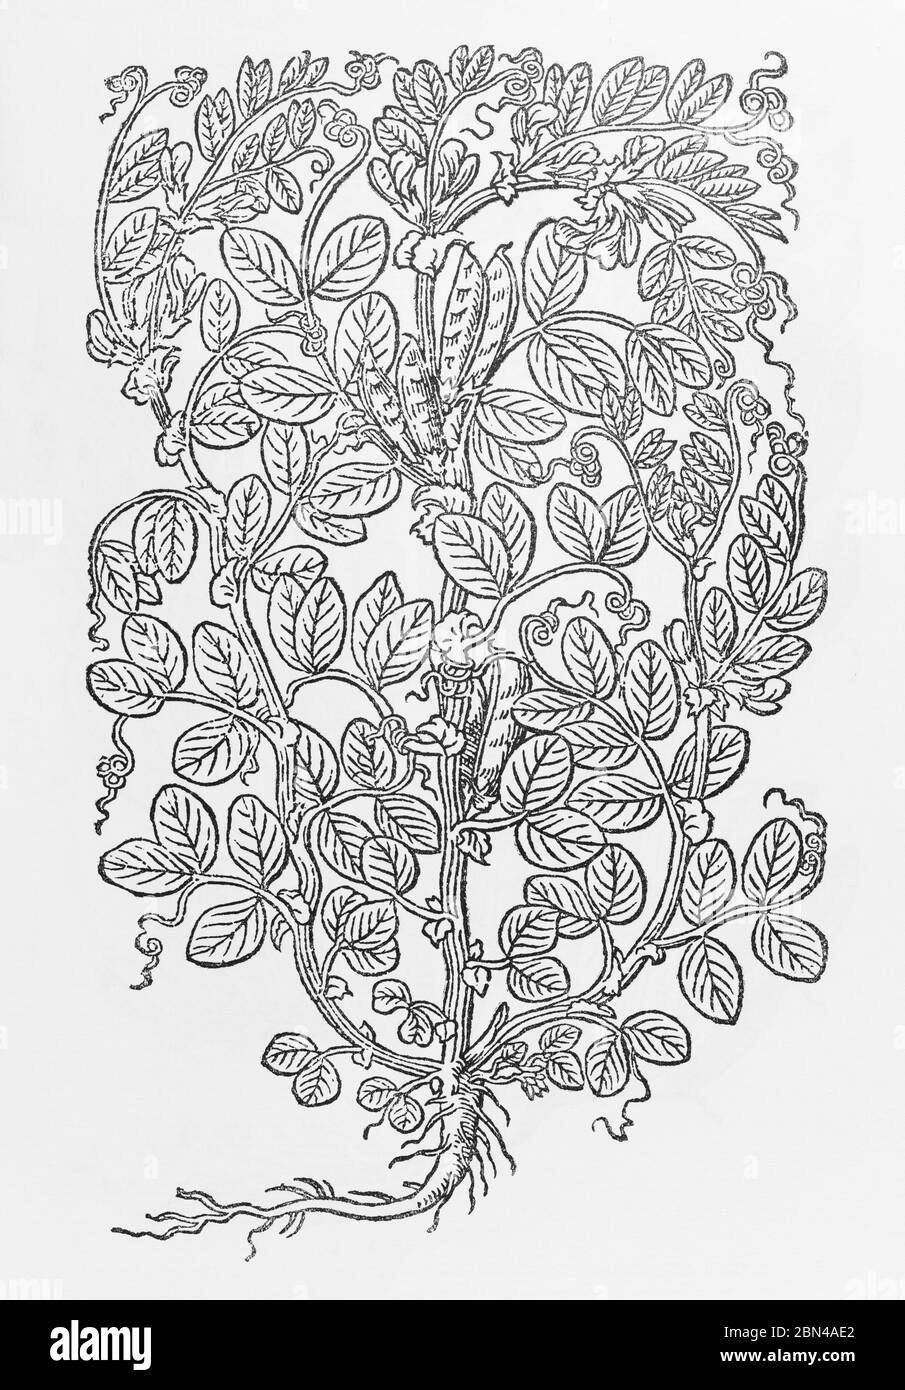 Haricot / Vicia faba plante bois de Gerarde Herball, Histoire des plantes. Il se réfère à lui comme Wild Bean / Faba sylvestris. P1036 Banque D'Images